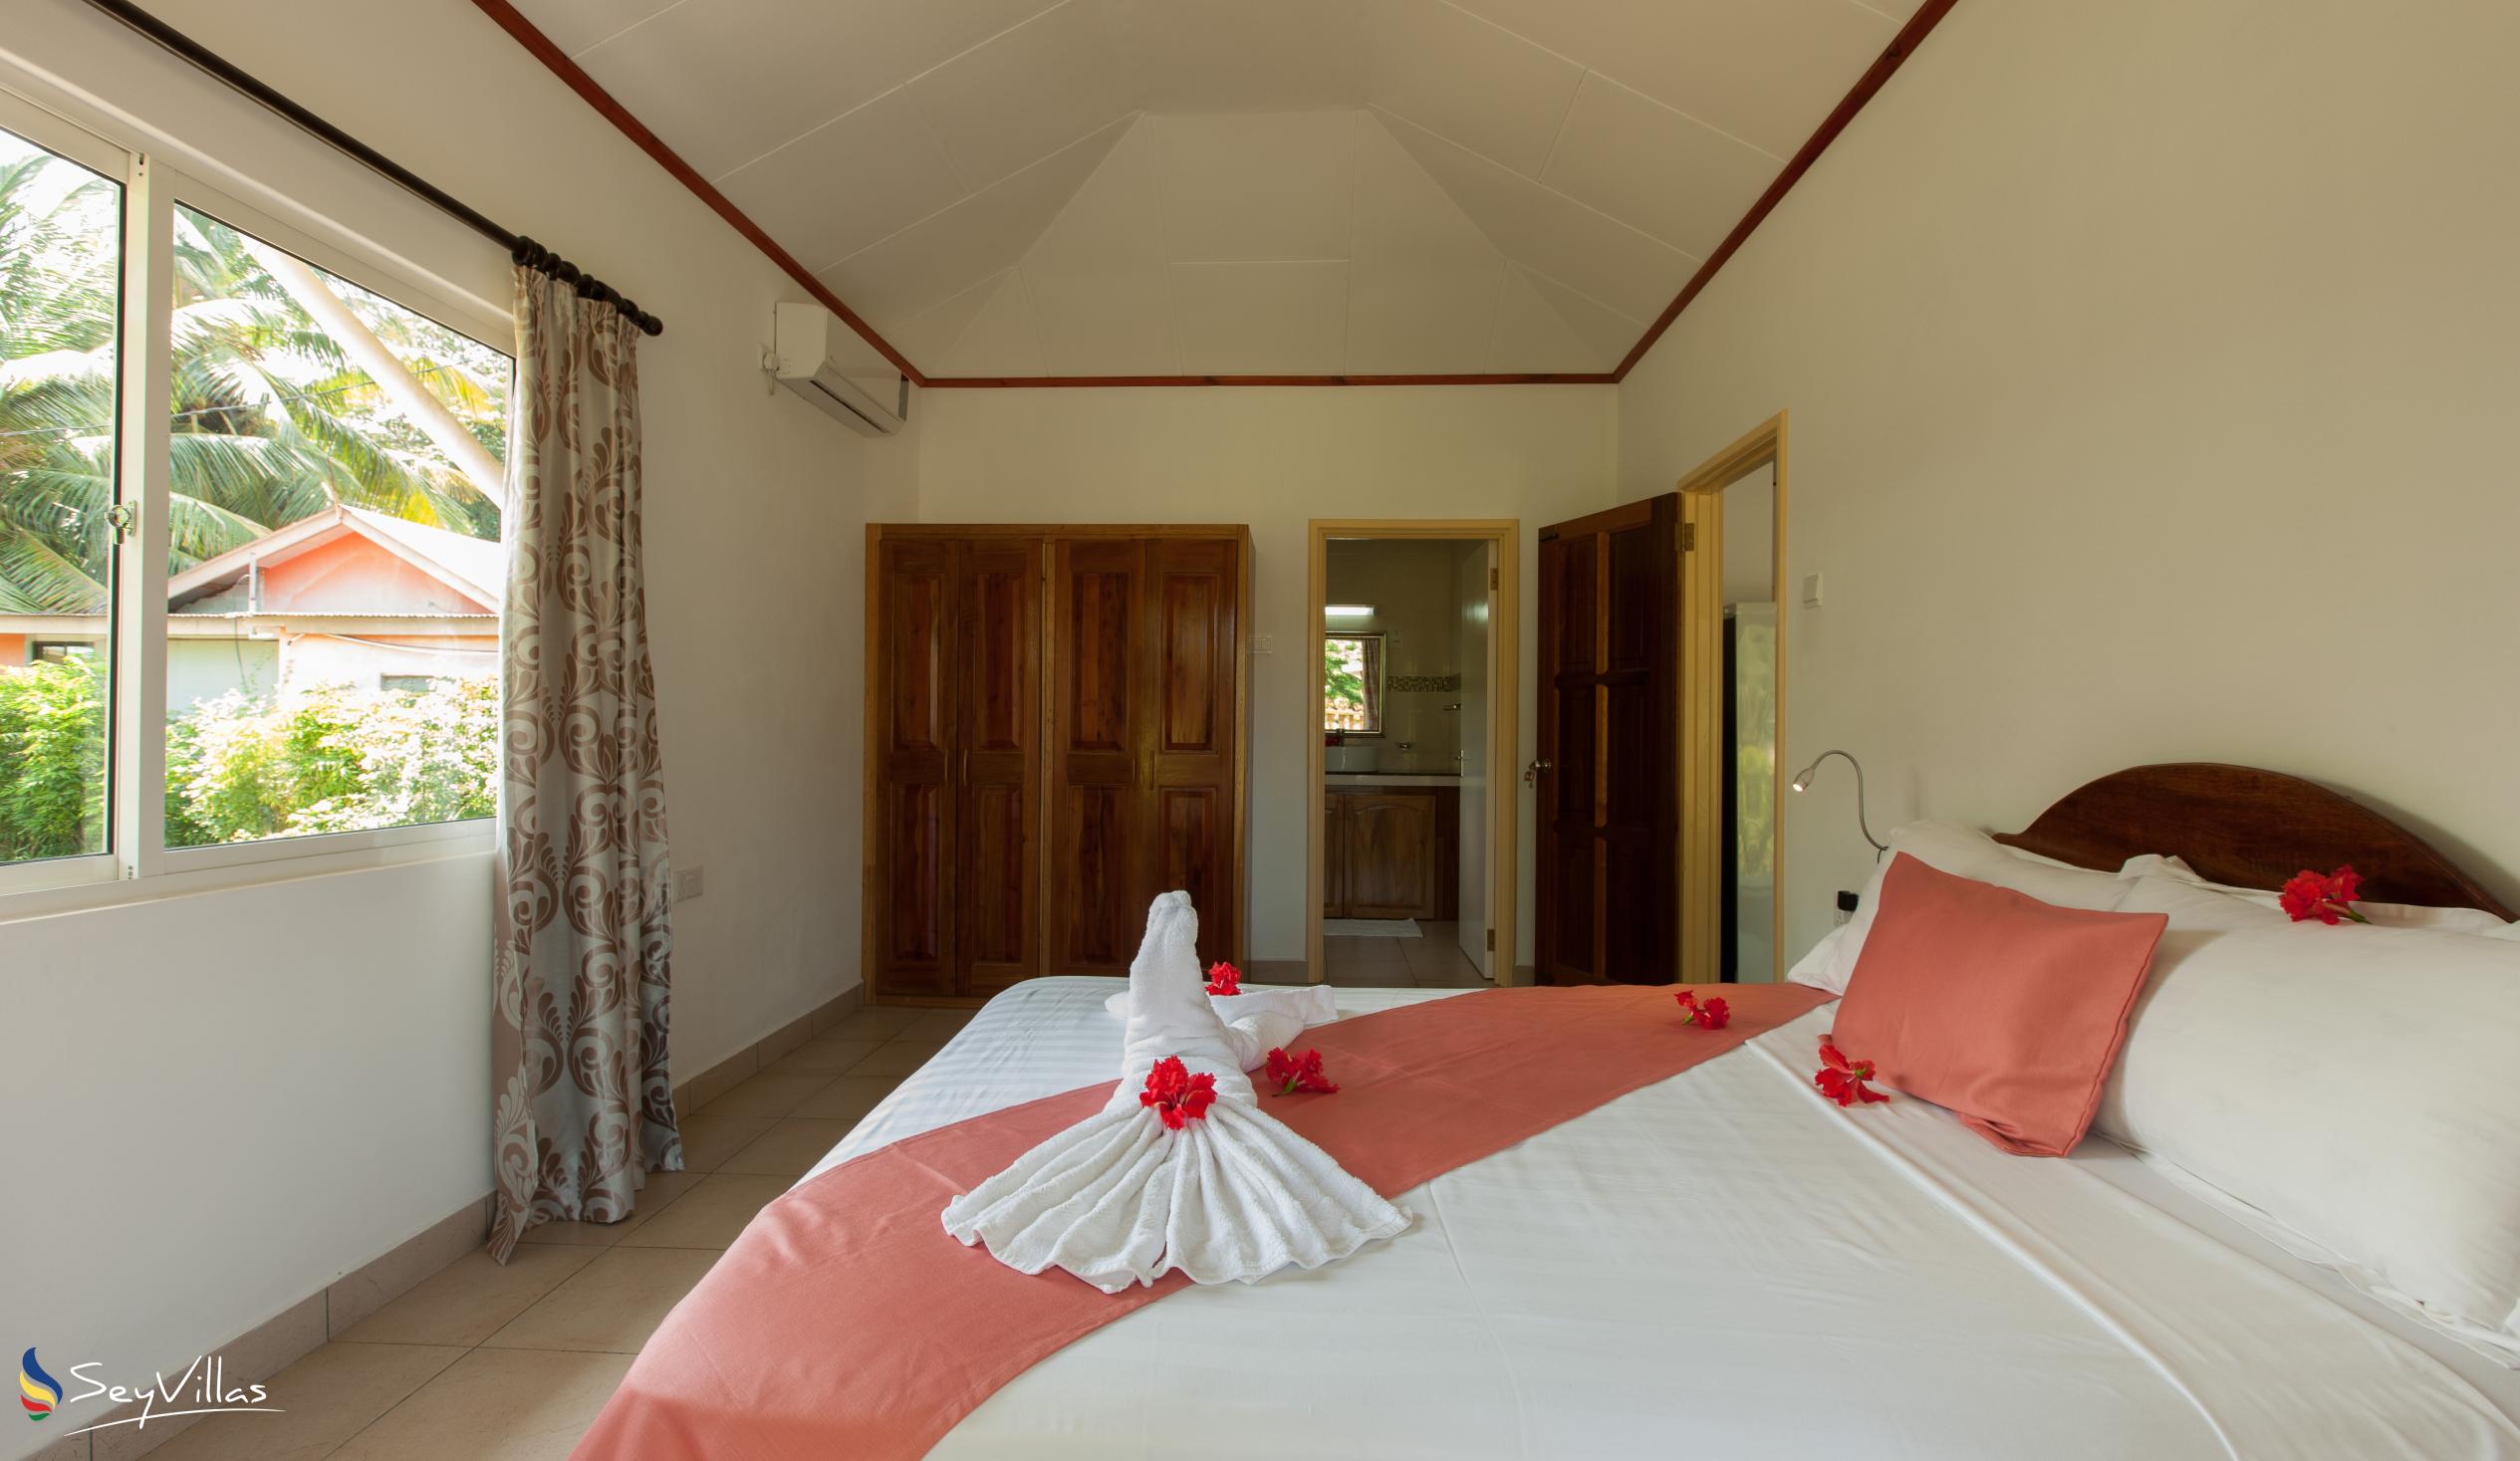 Foto 52: Hostellerie La Digue - Chalet mit 2 Schlafzimmern - La Digue (Seychellen)